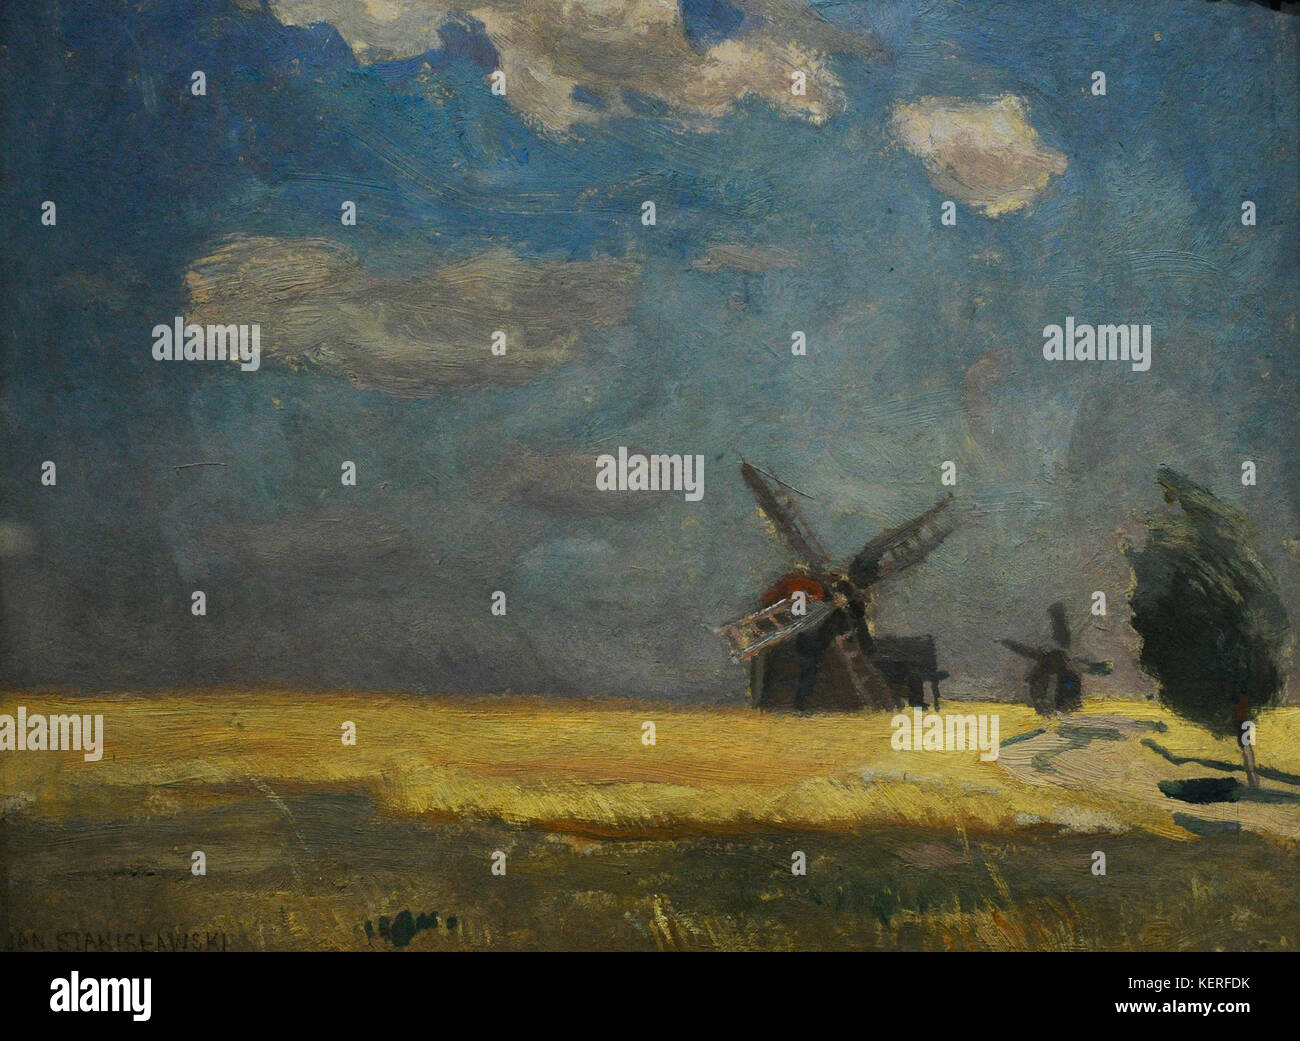 Jan Stanislawski (1860-1907) peintre polonais.. les moulins à vent (midi), ca.1902. musée de Silésie. Katowice. Pologne. Banque D'Images